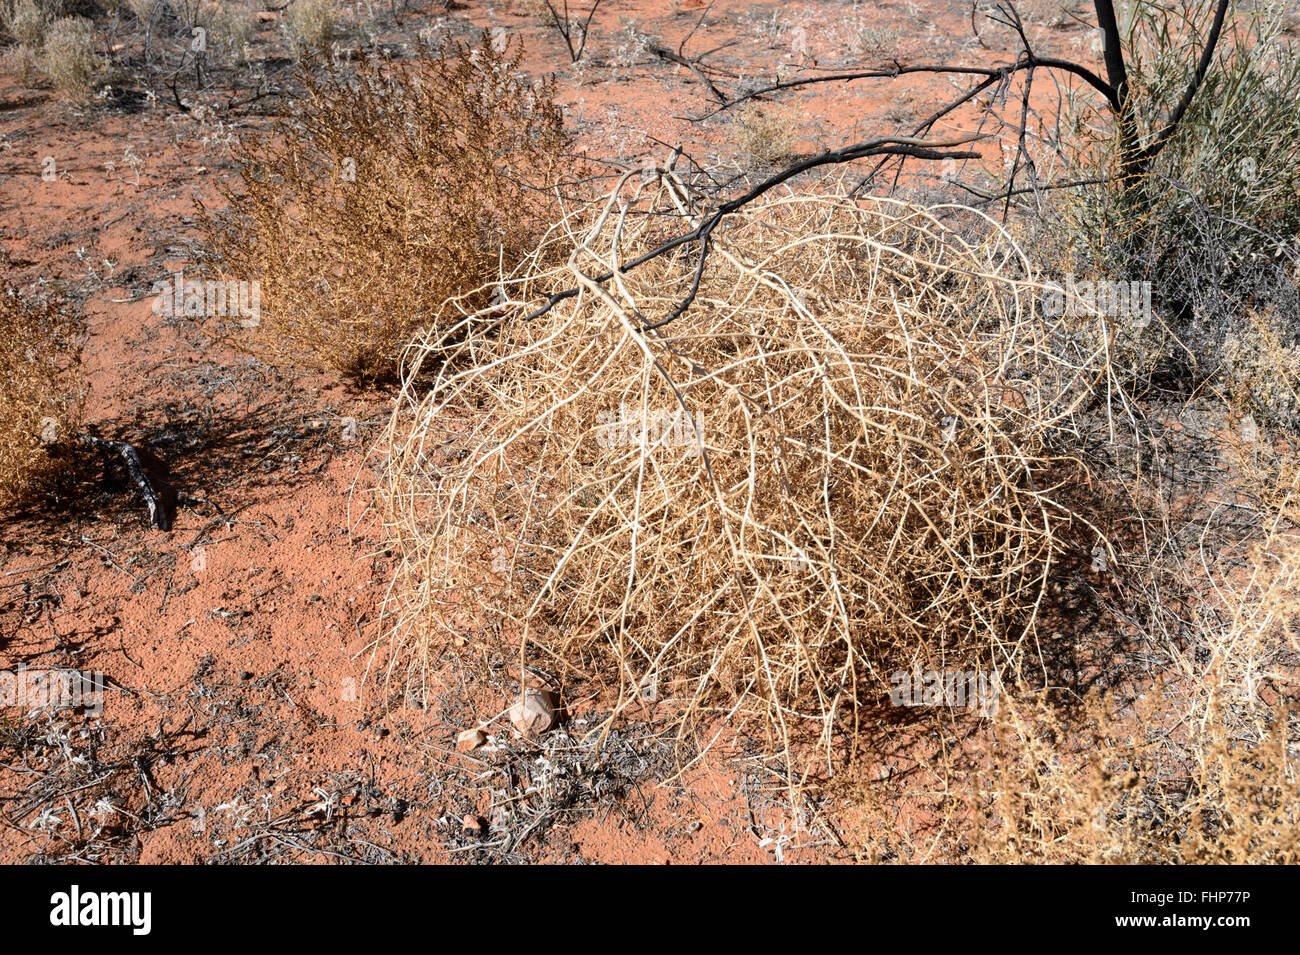 La végétation du désert, Territoire du Nord, Australie Banque D'Images